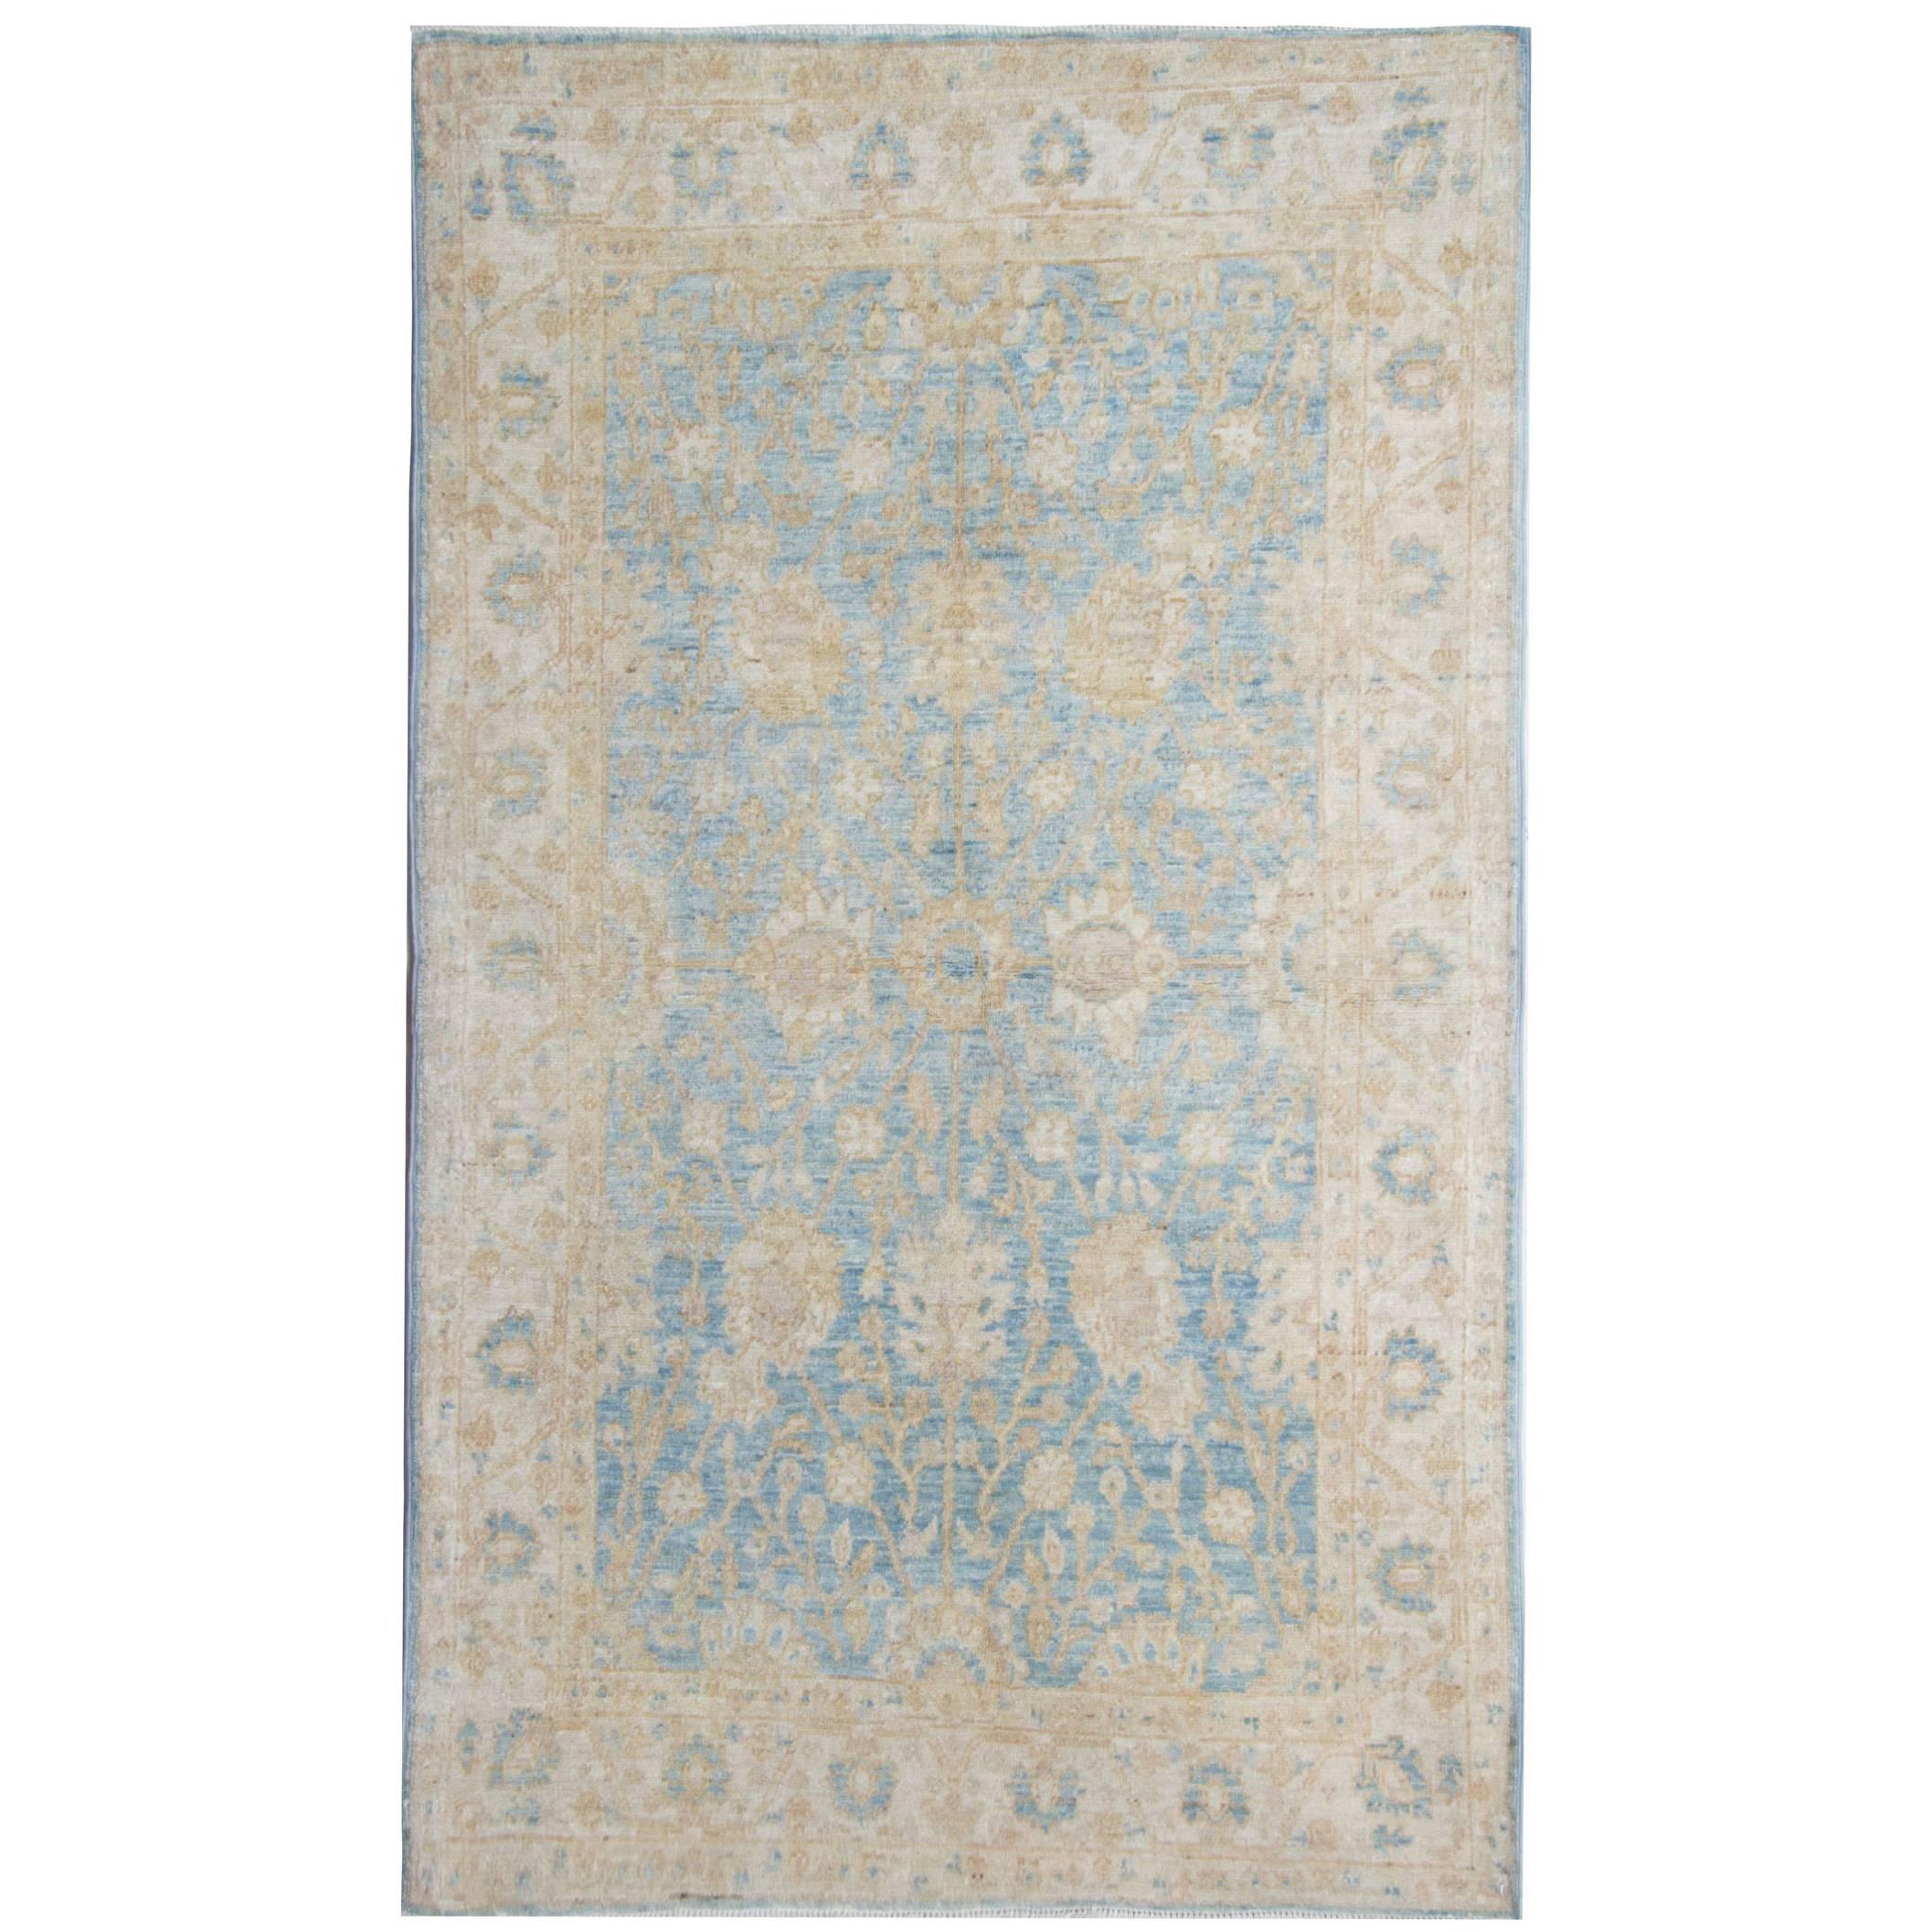 Hellblaue Teppiche, Zeigler handgefertigter Teppich, Teppich aus Eichenholz mit Blumenmuster 